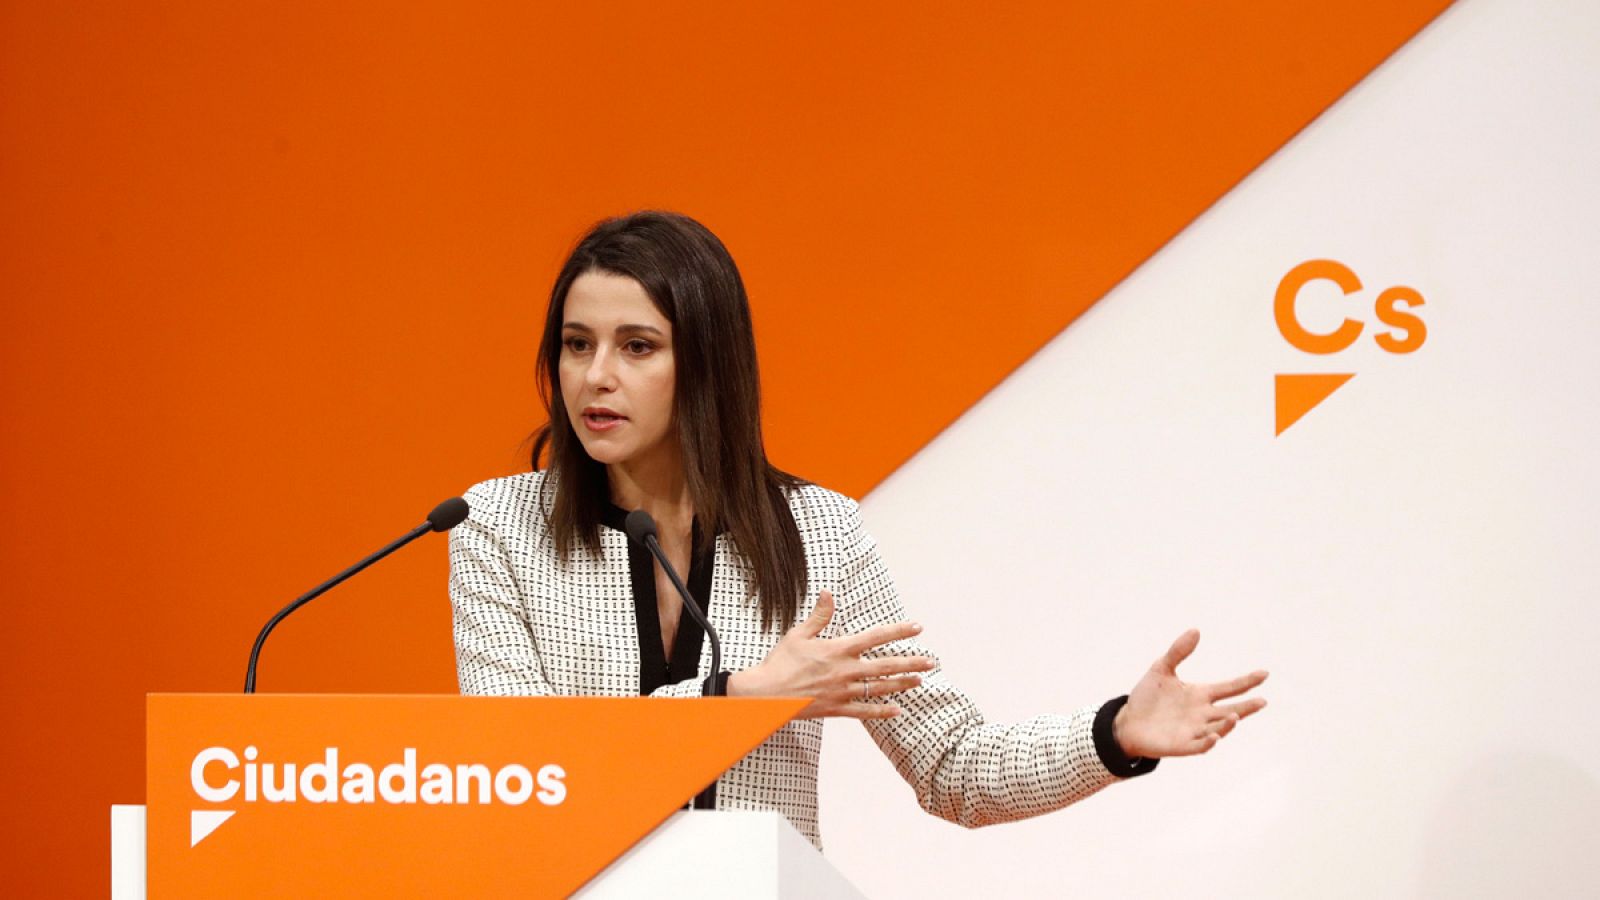 La nueva portavoz de Ciudadanos, Inés Arrimadas, en su primera rueda de prensa en esa función.